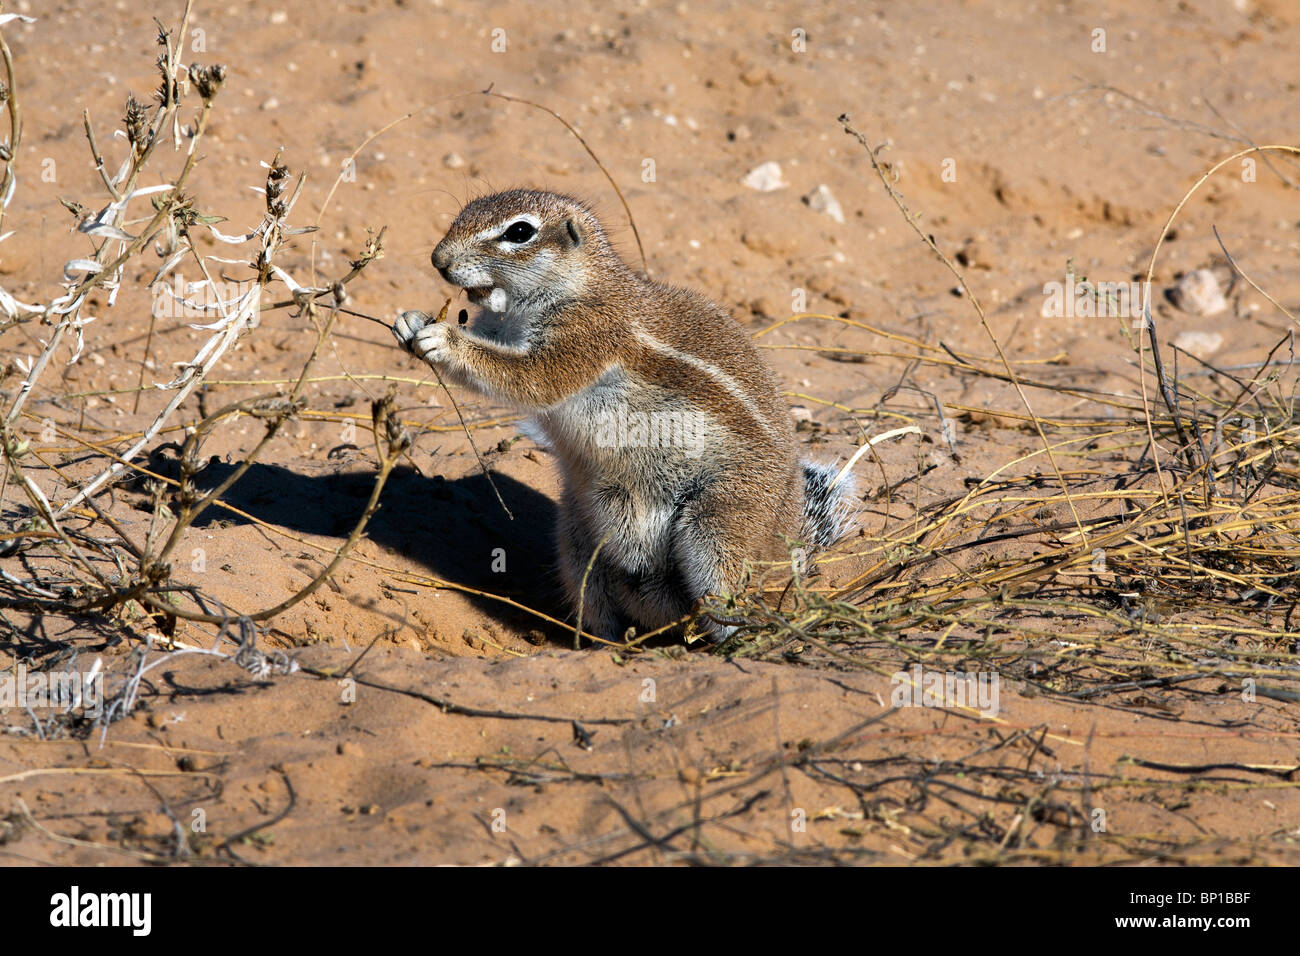 Kap-Erdhörnchen Xerus Inauris treten hauptsächlich in den trockenen, Halbwüsten Regionen des südlichen Afrika, vor allem in der Kalahari. Stockfoto